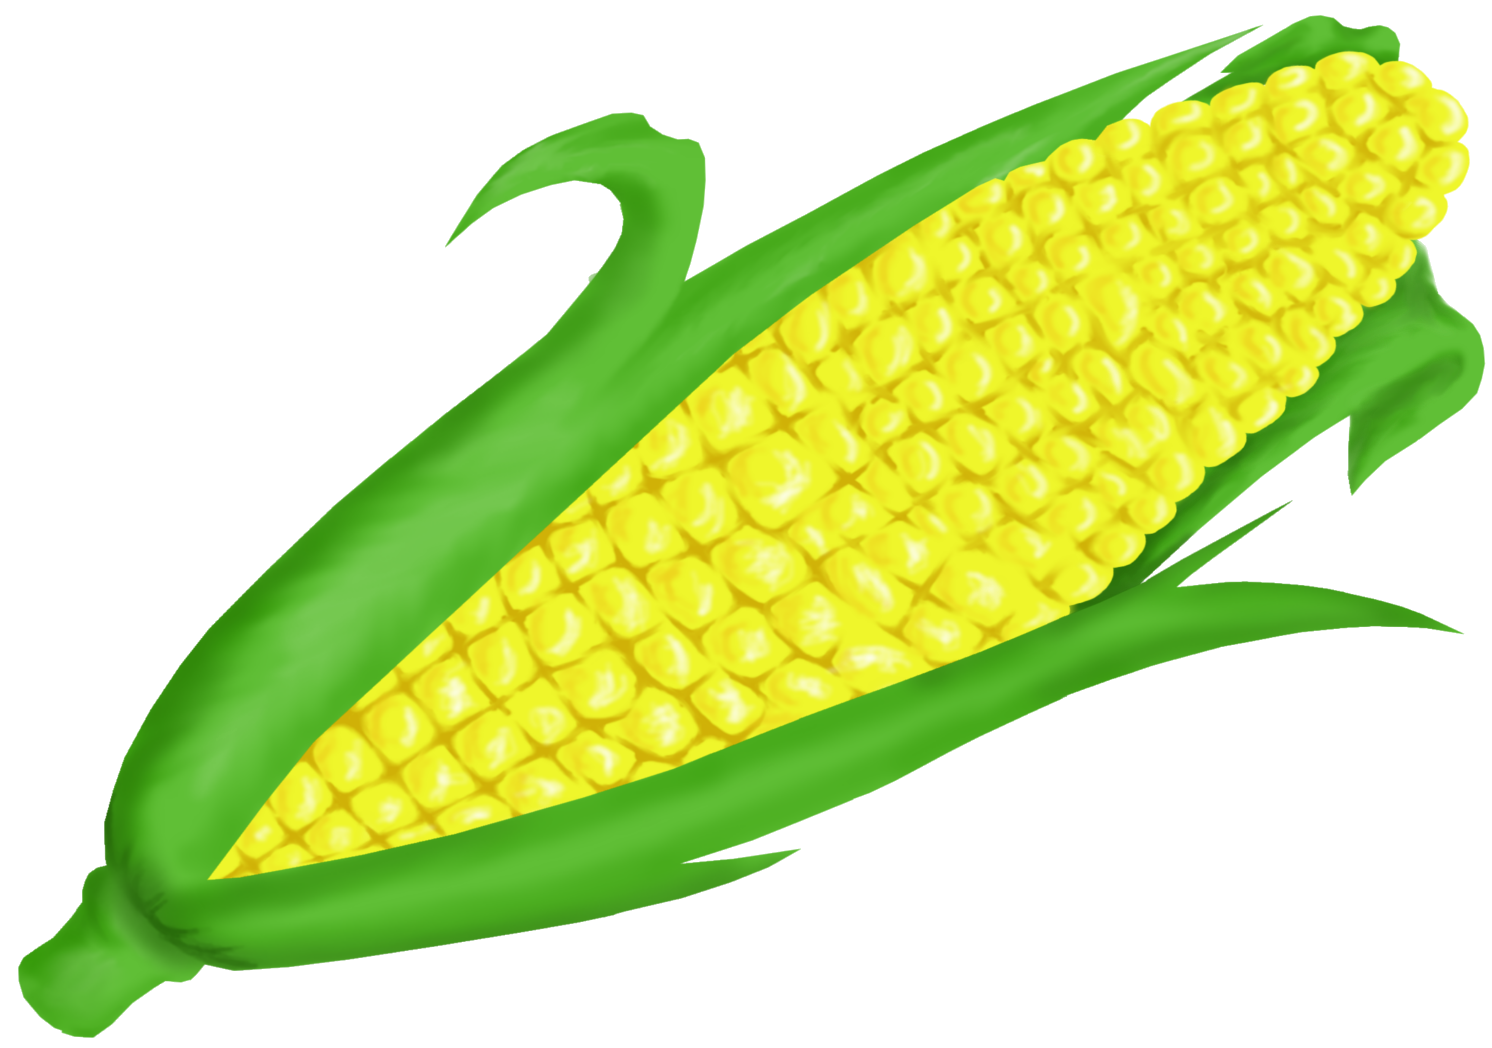 Corn clipartrn clip art vector clip art clipartcow clipartix